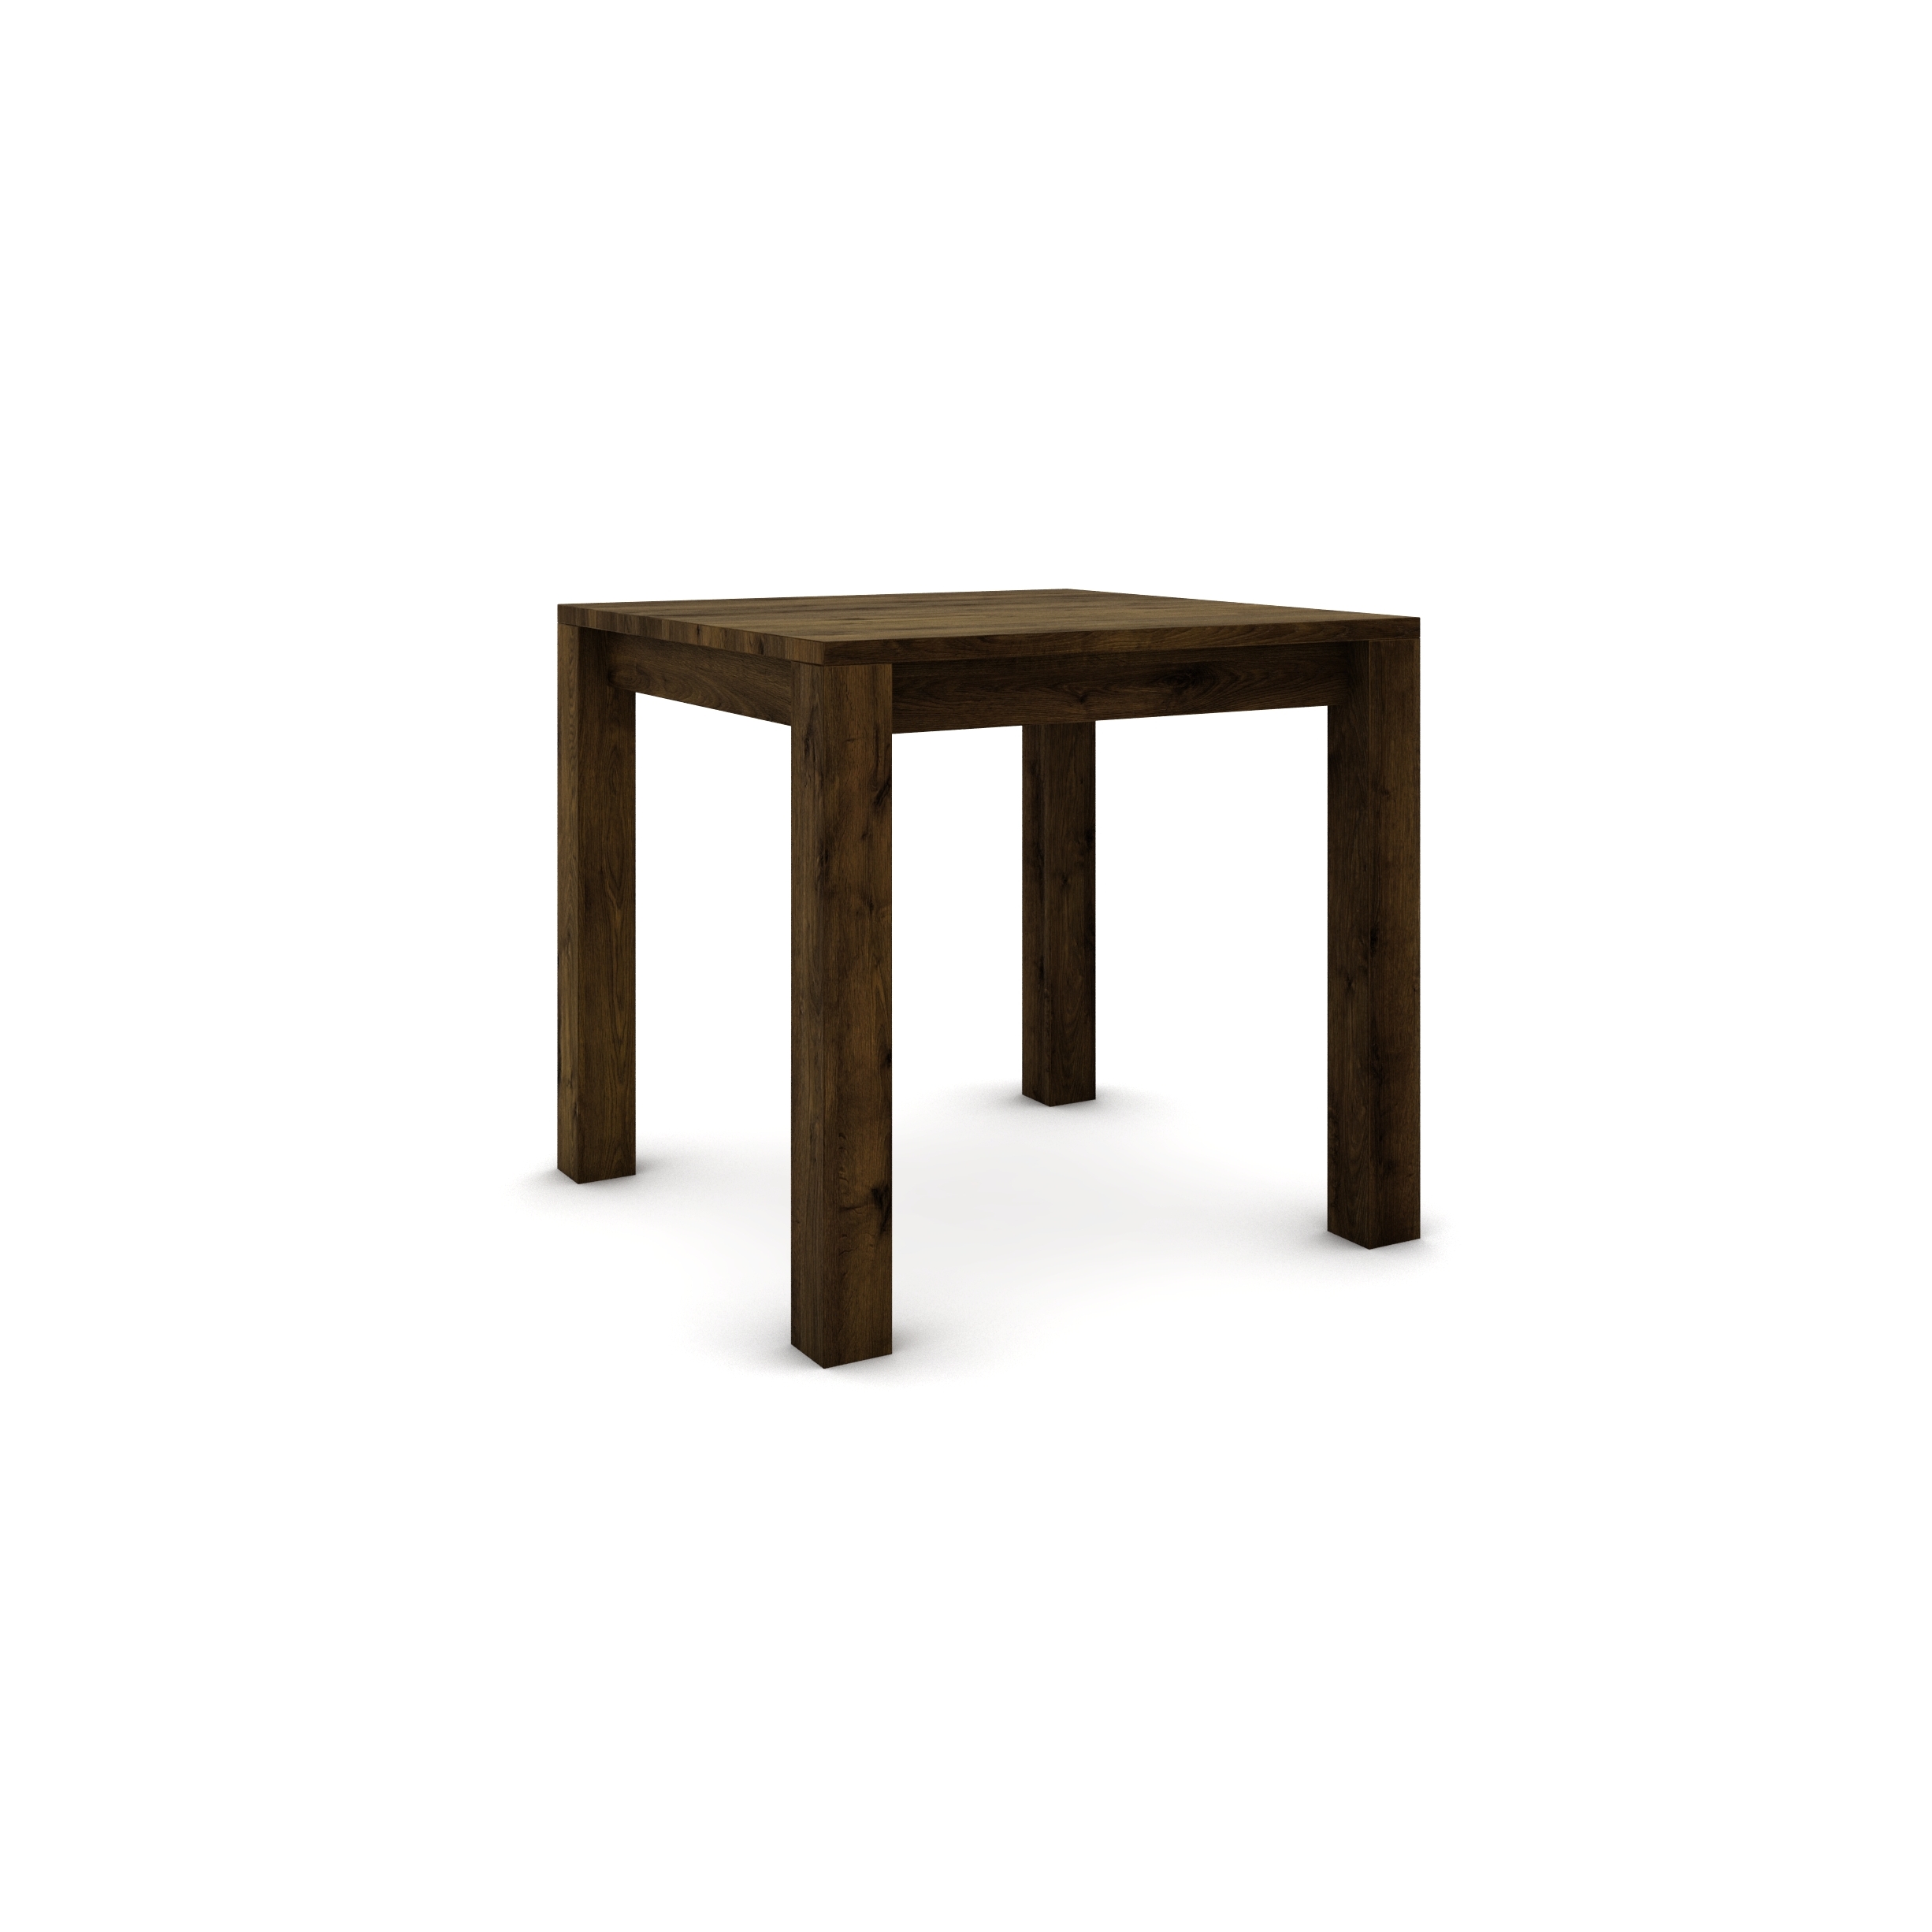 Dubový stôl 80 x 80 cm, hnedá zem so zlatým efektom